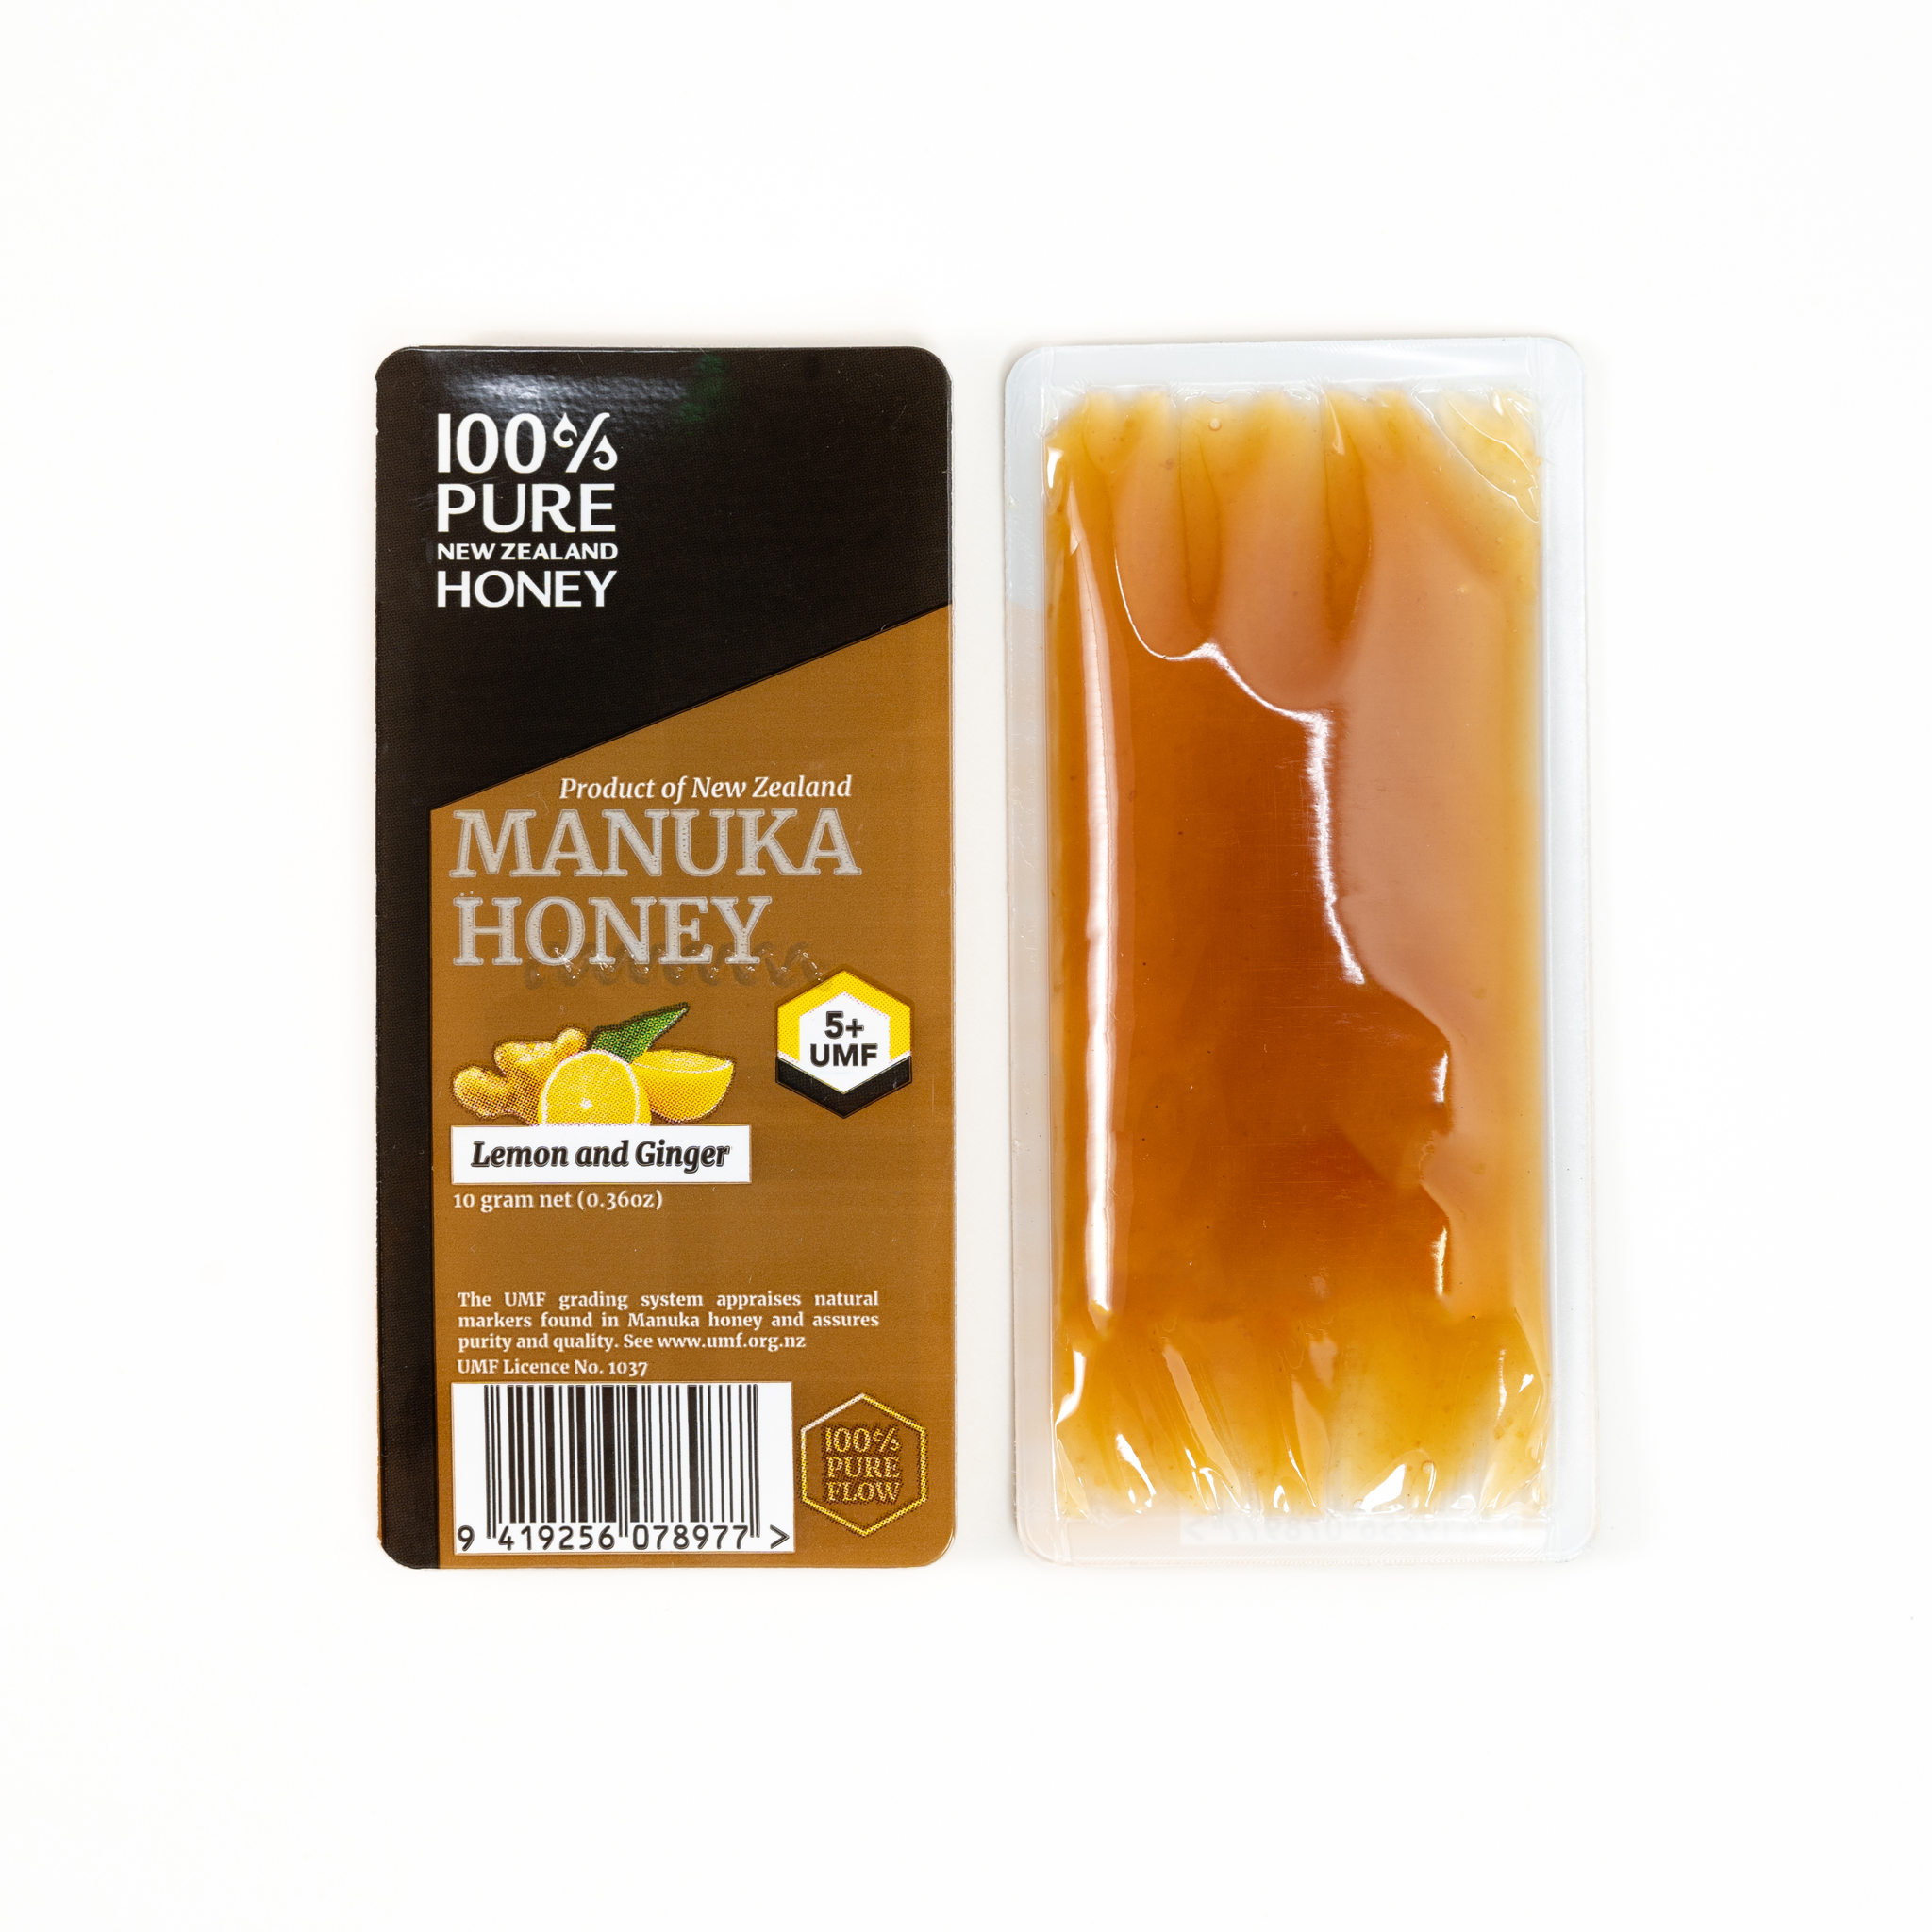 5 Benefits of Manuka Honey